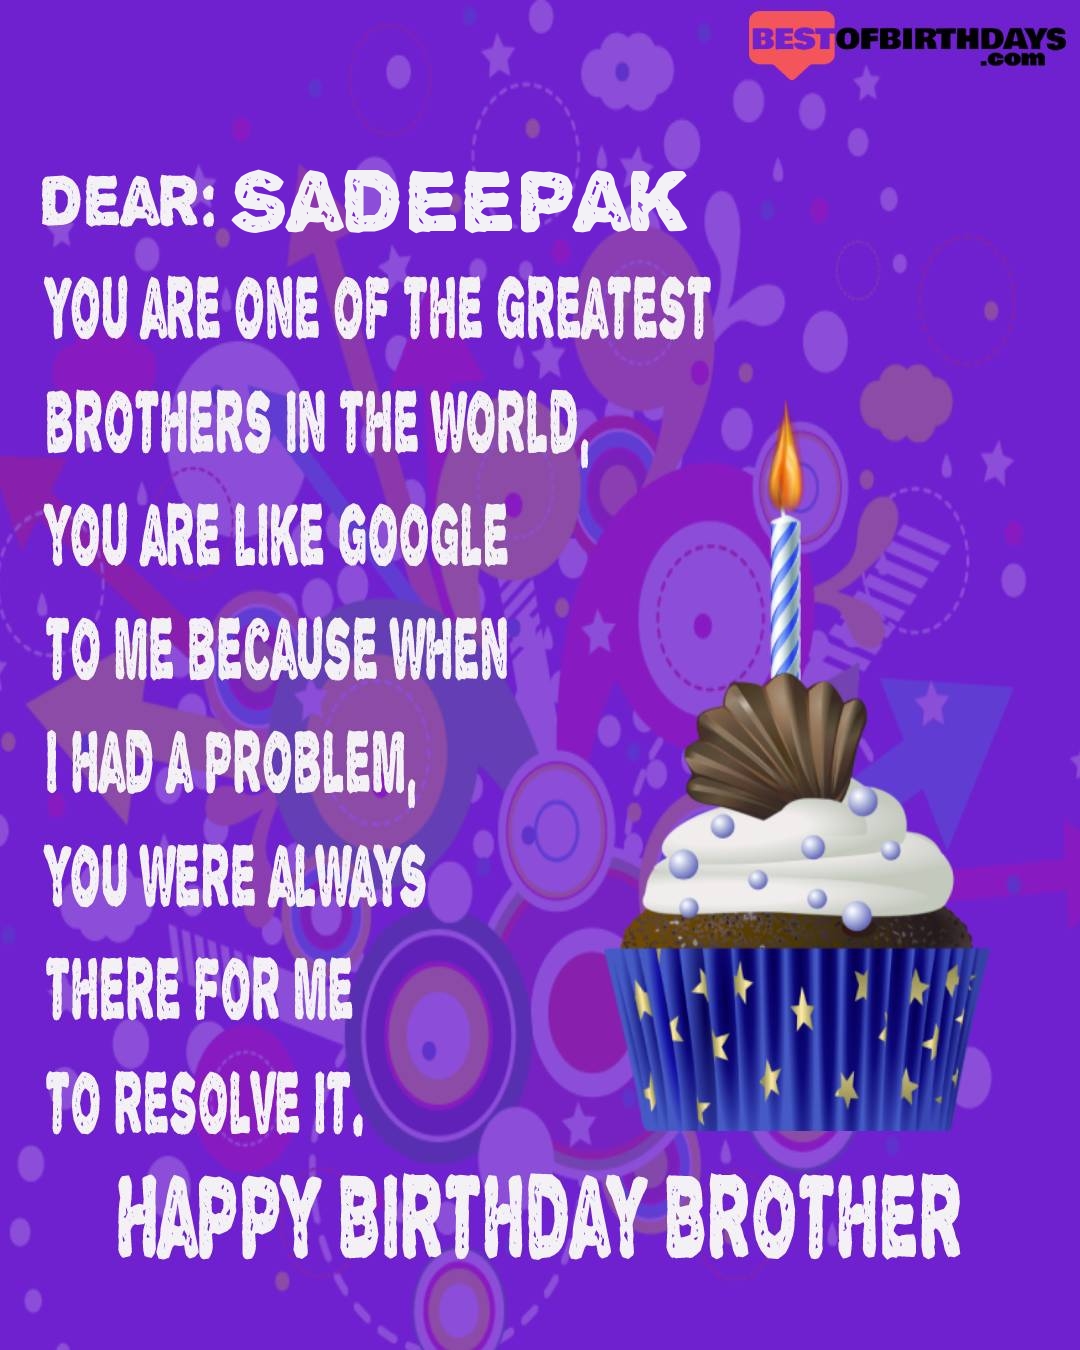 Happy birthday sadeepak bhai brother bro